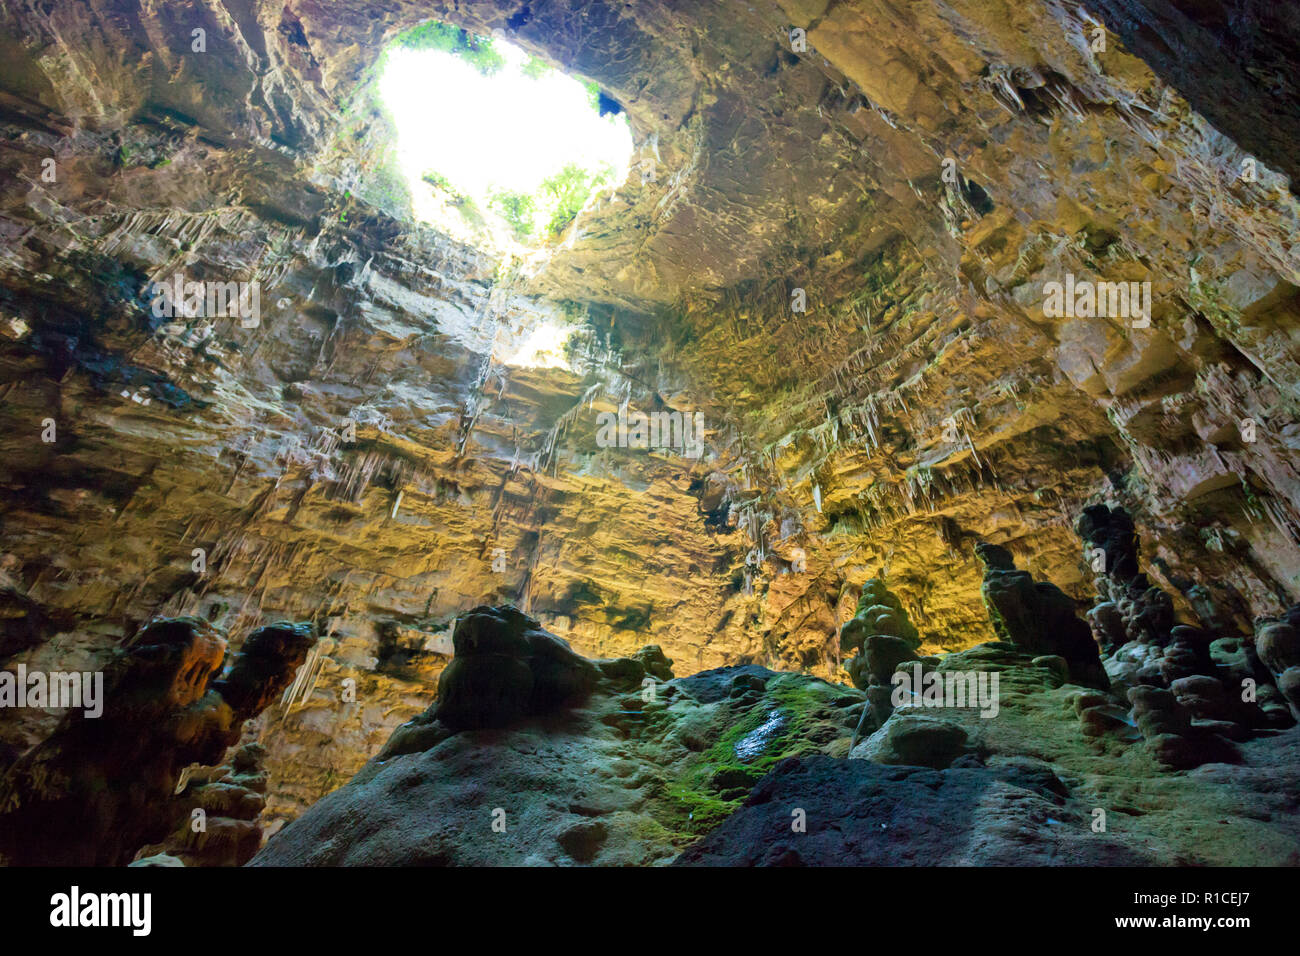 Grotta di Castellano, Pouilles, Italie - l'exploration de l'immense grotte sous terre Banque D'Images